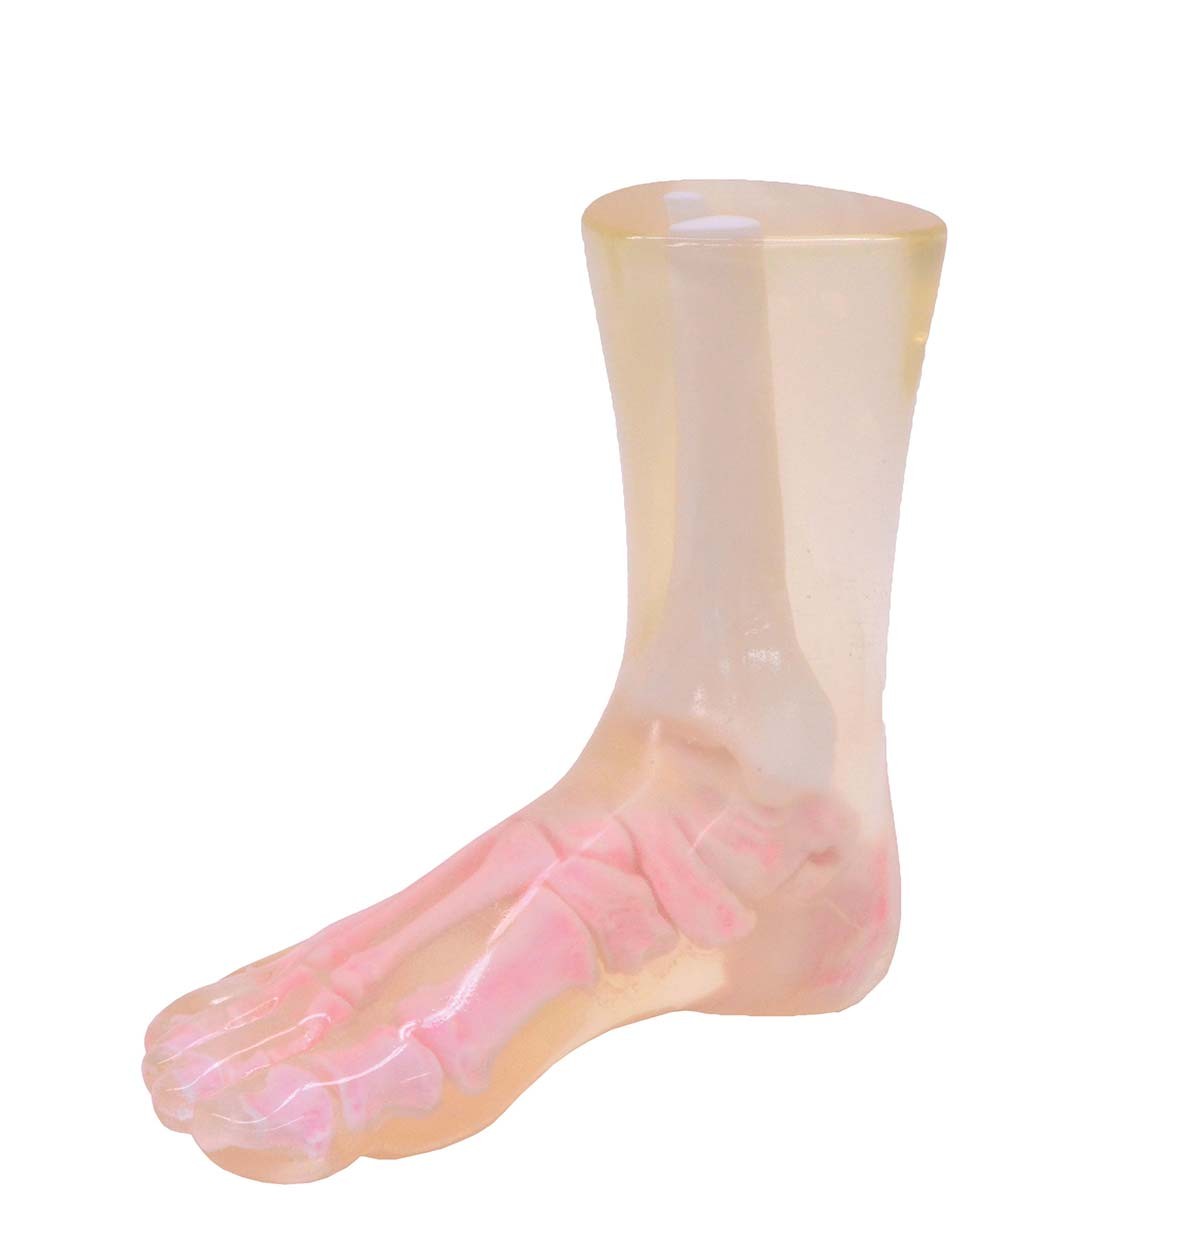 Röntgen-Teilphantom mit künstlichen Knochen - Rechter Fuß, transparent 1